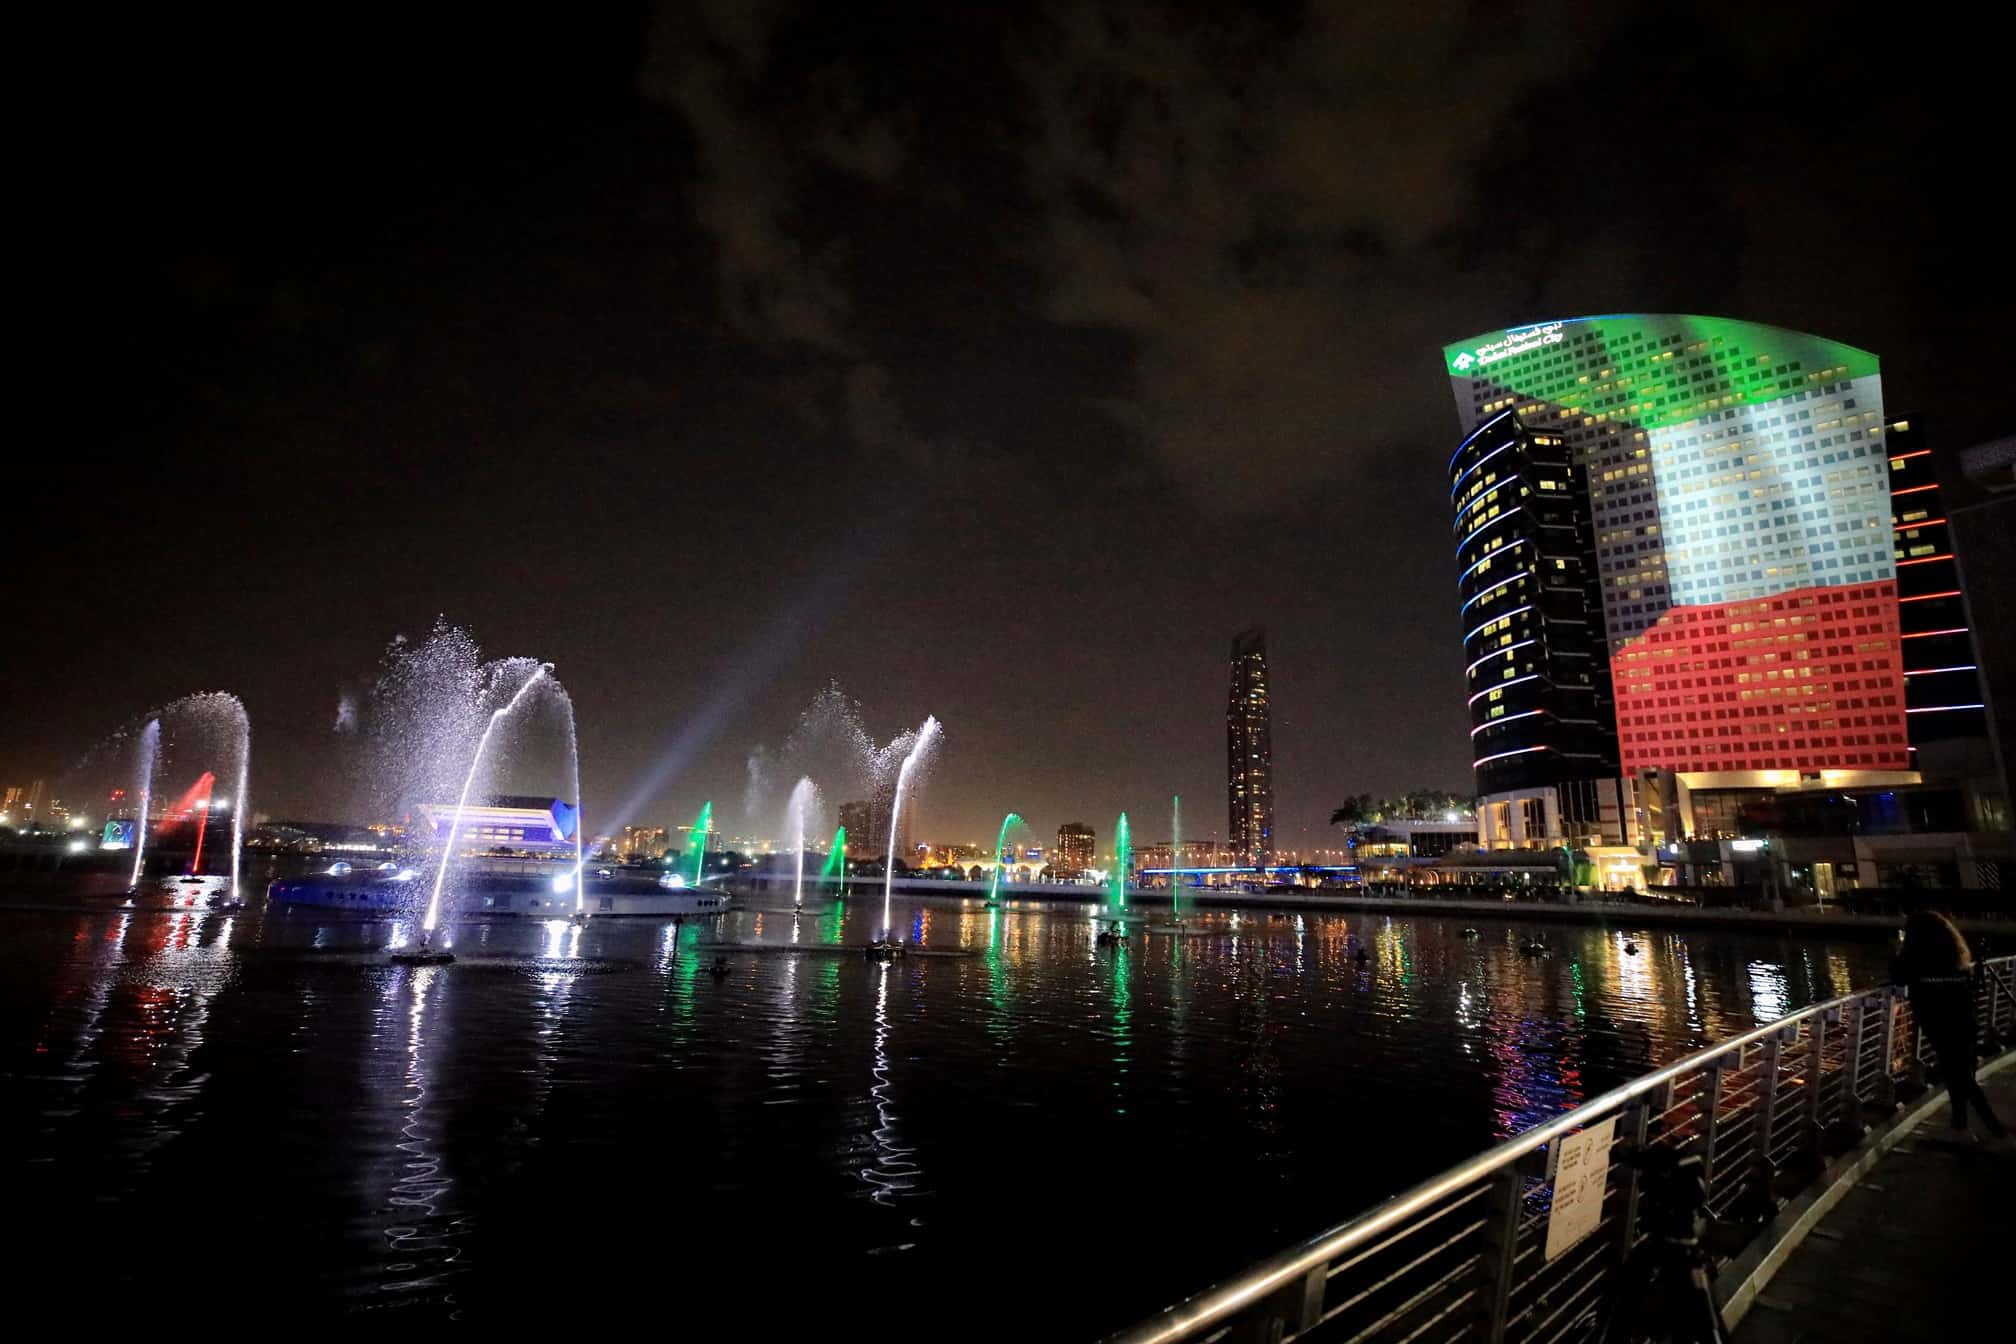 إضاءة أبرز معالم دبي احتفاءً باليوم الوطني الستين لدولة الكويت الشقيقة